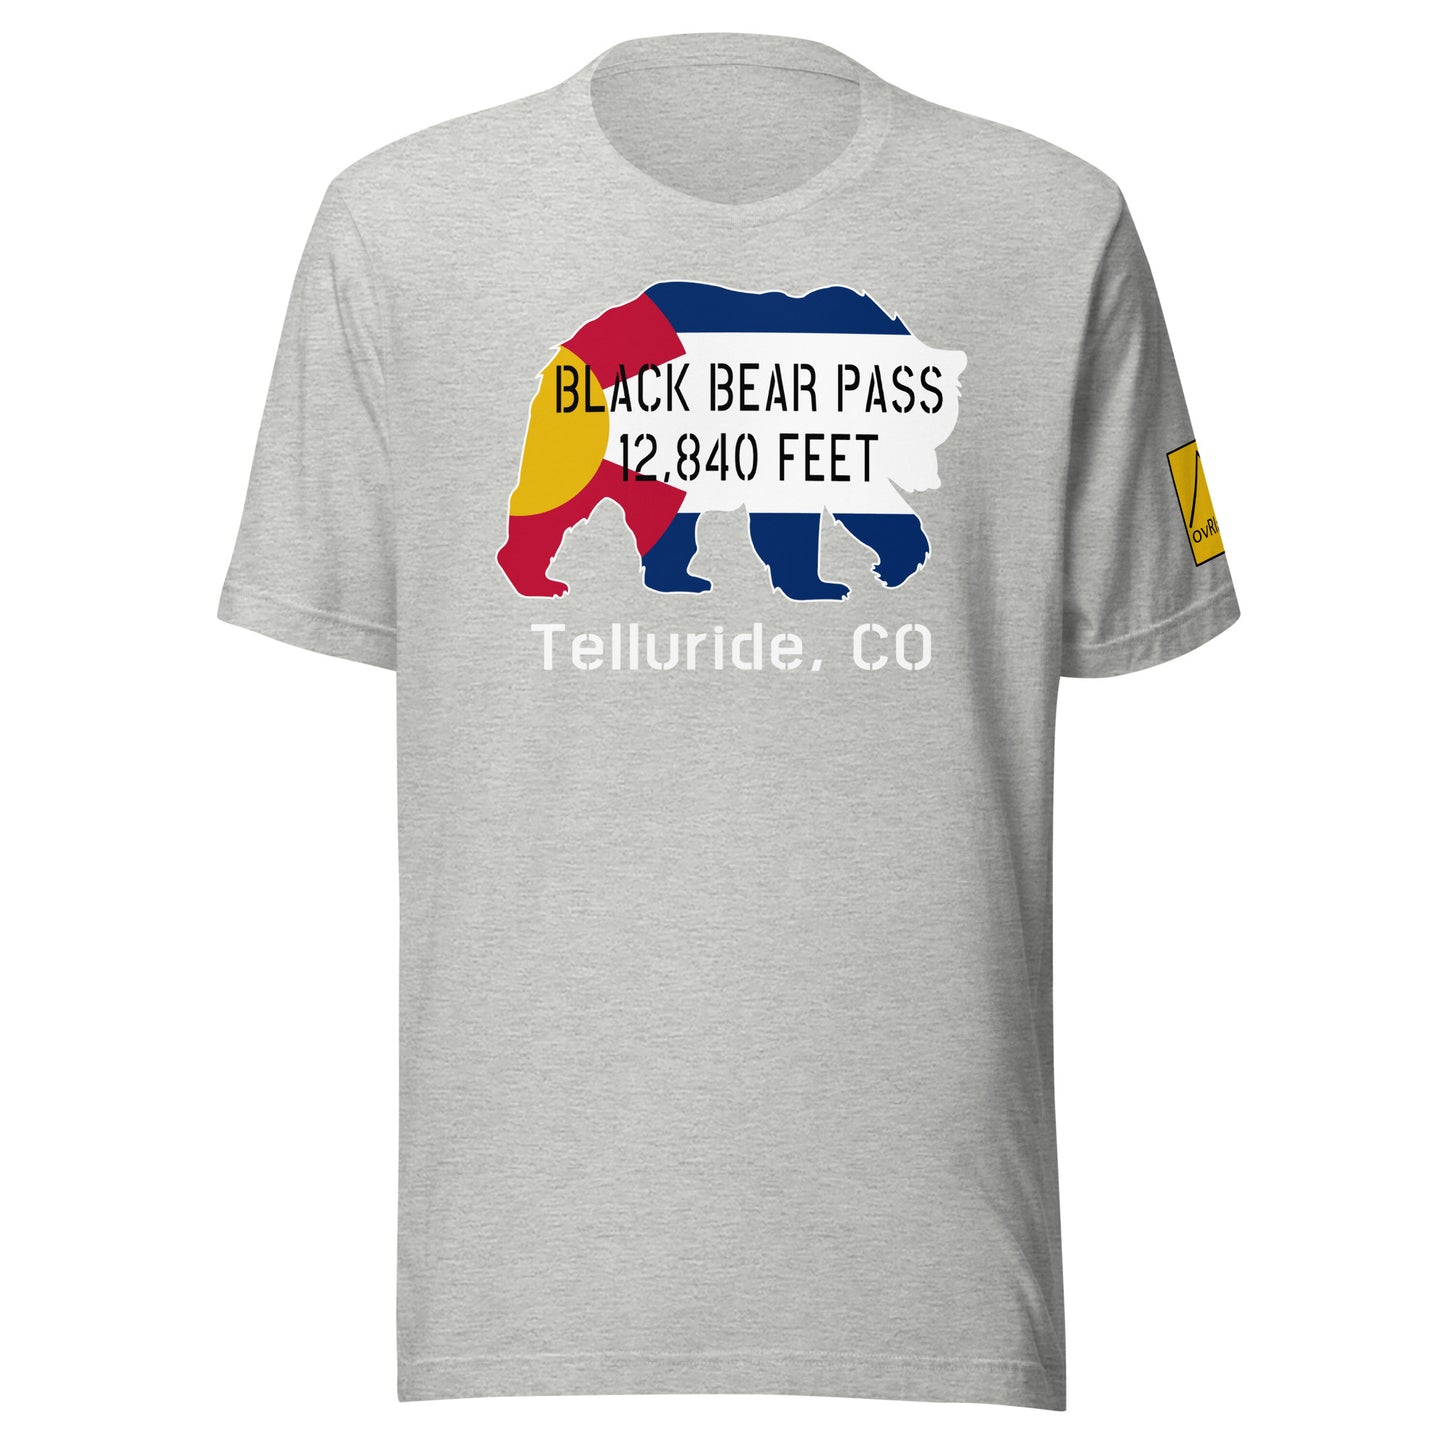 Black Bear Pass, 12840 feet, Telluride, CO. Light Grey T-shirt. overland365.com